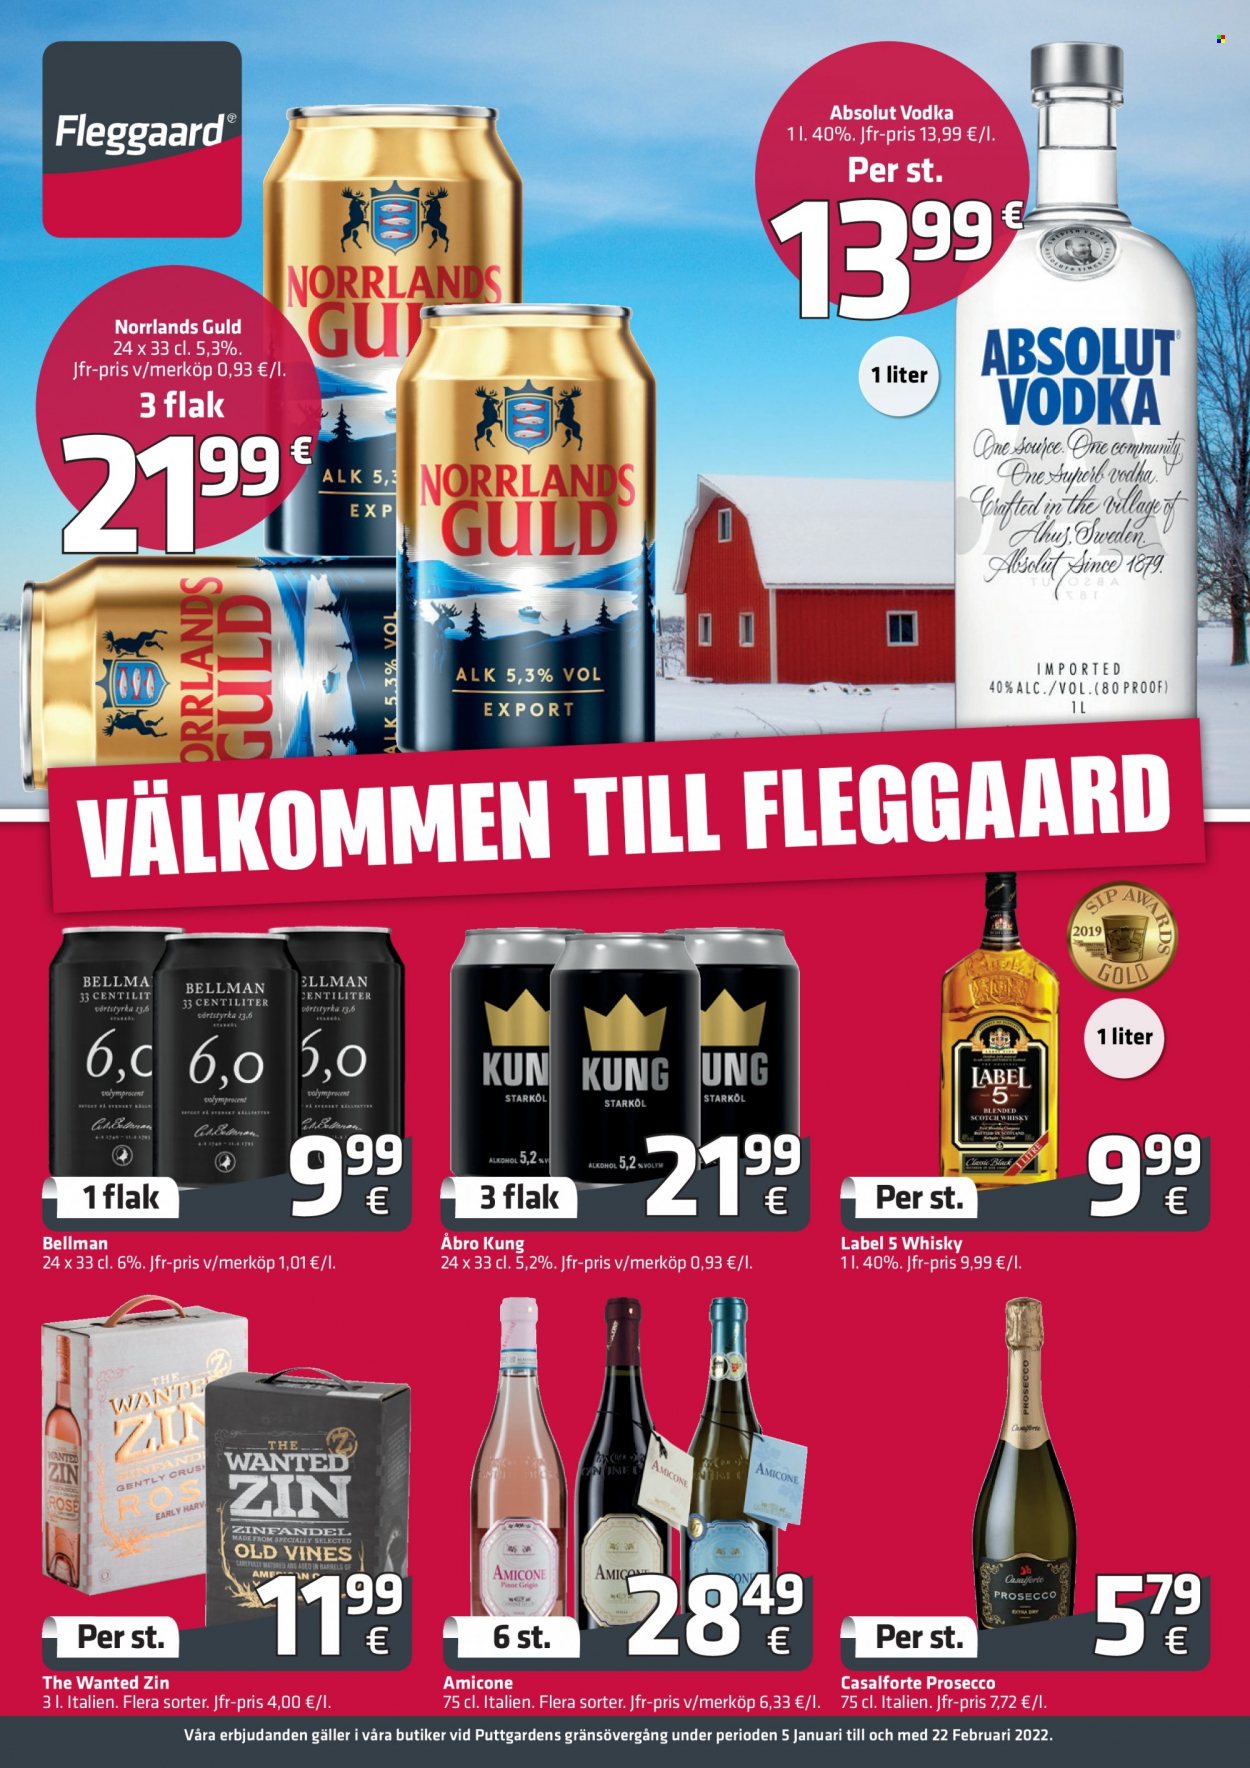 thumbnail - Fleggaard tilbud  - 5.1.2022 - 22.2.2022 - tilbudsprodukter - prosecco, vin, Zinfandel, Absolut, scotch whisky, vodka, whisky. Side 1.